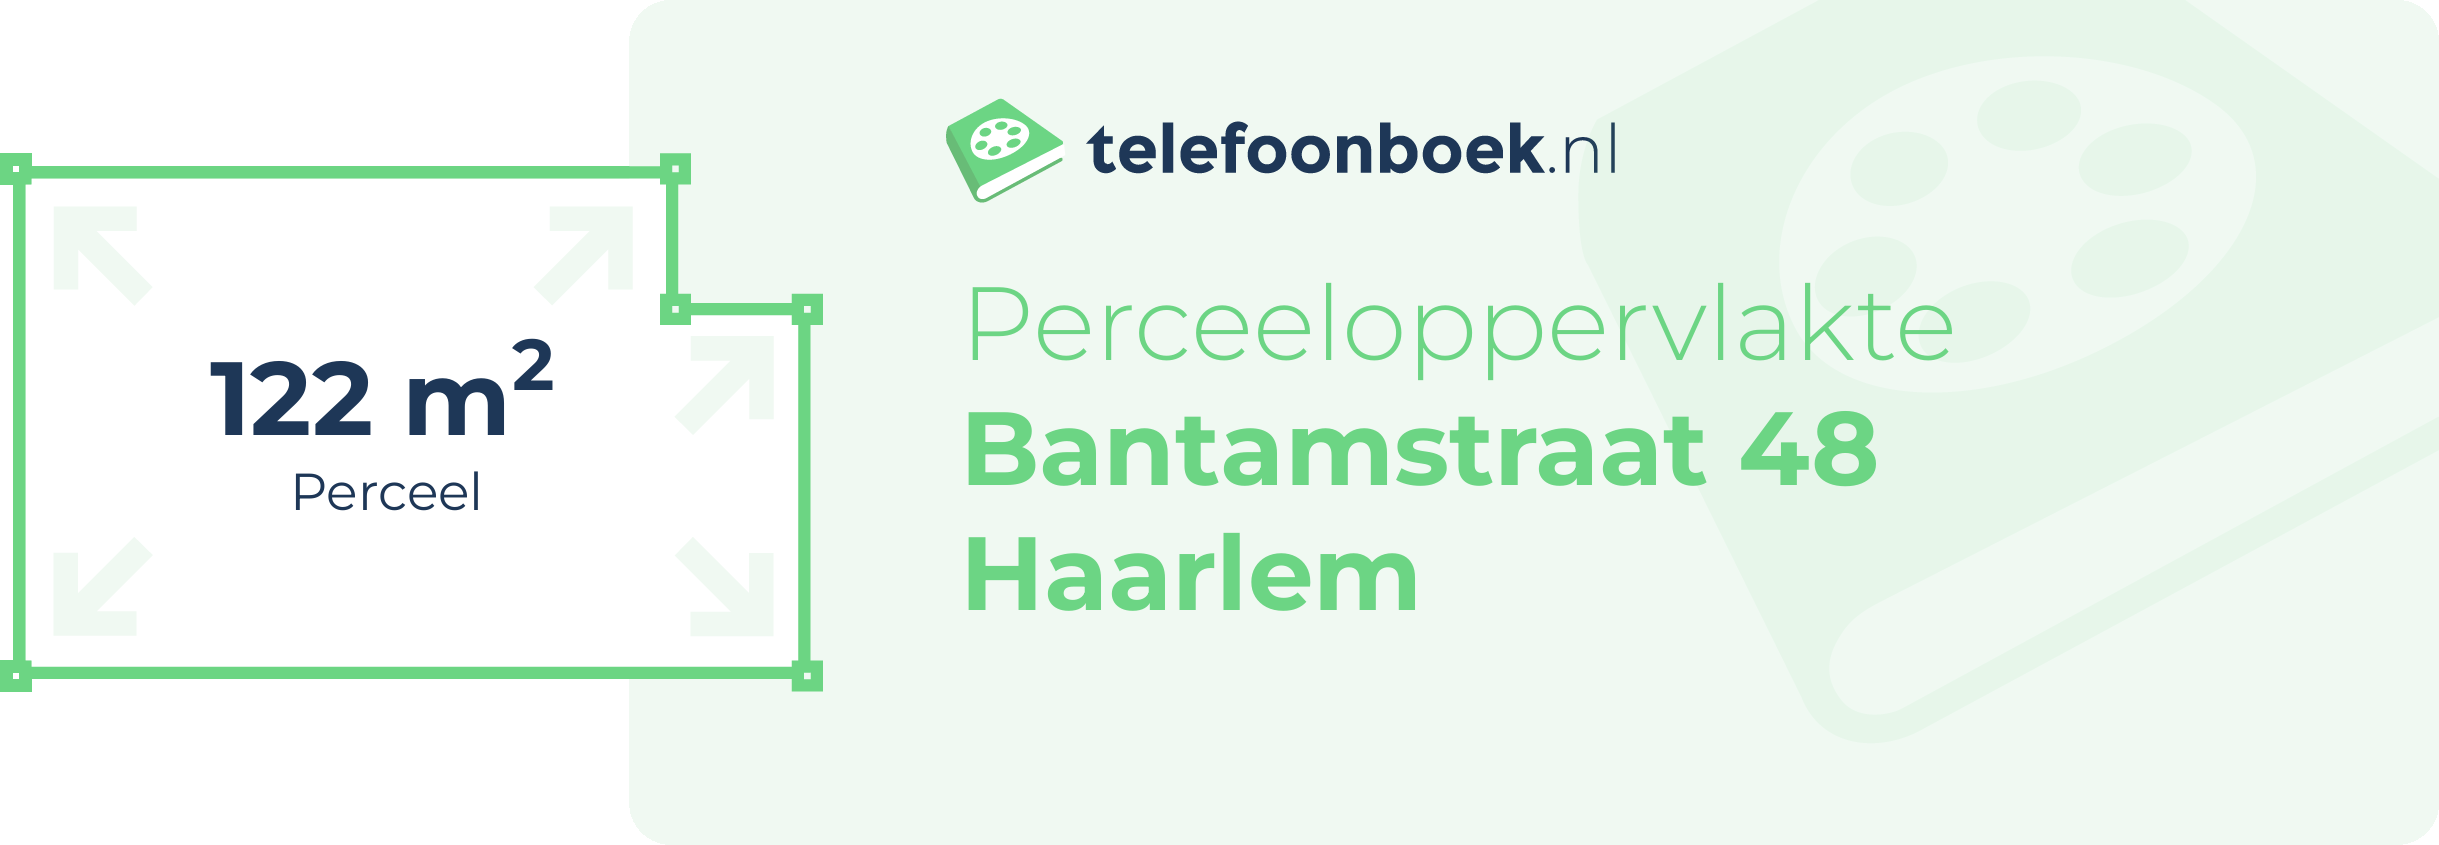 Perceeloppervlakte Bantamstraat 48 Haarlem